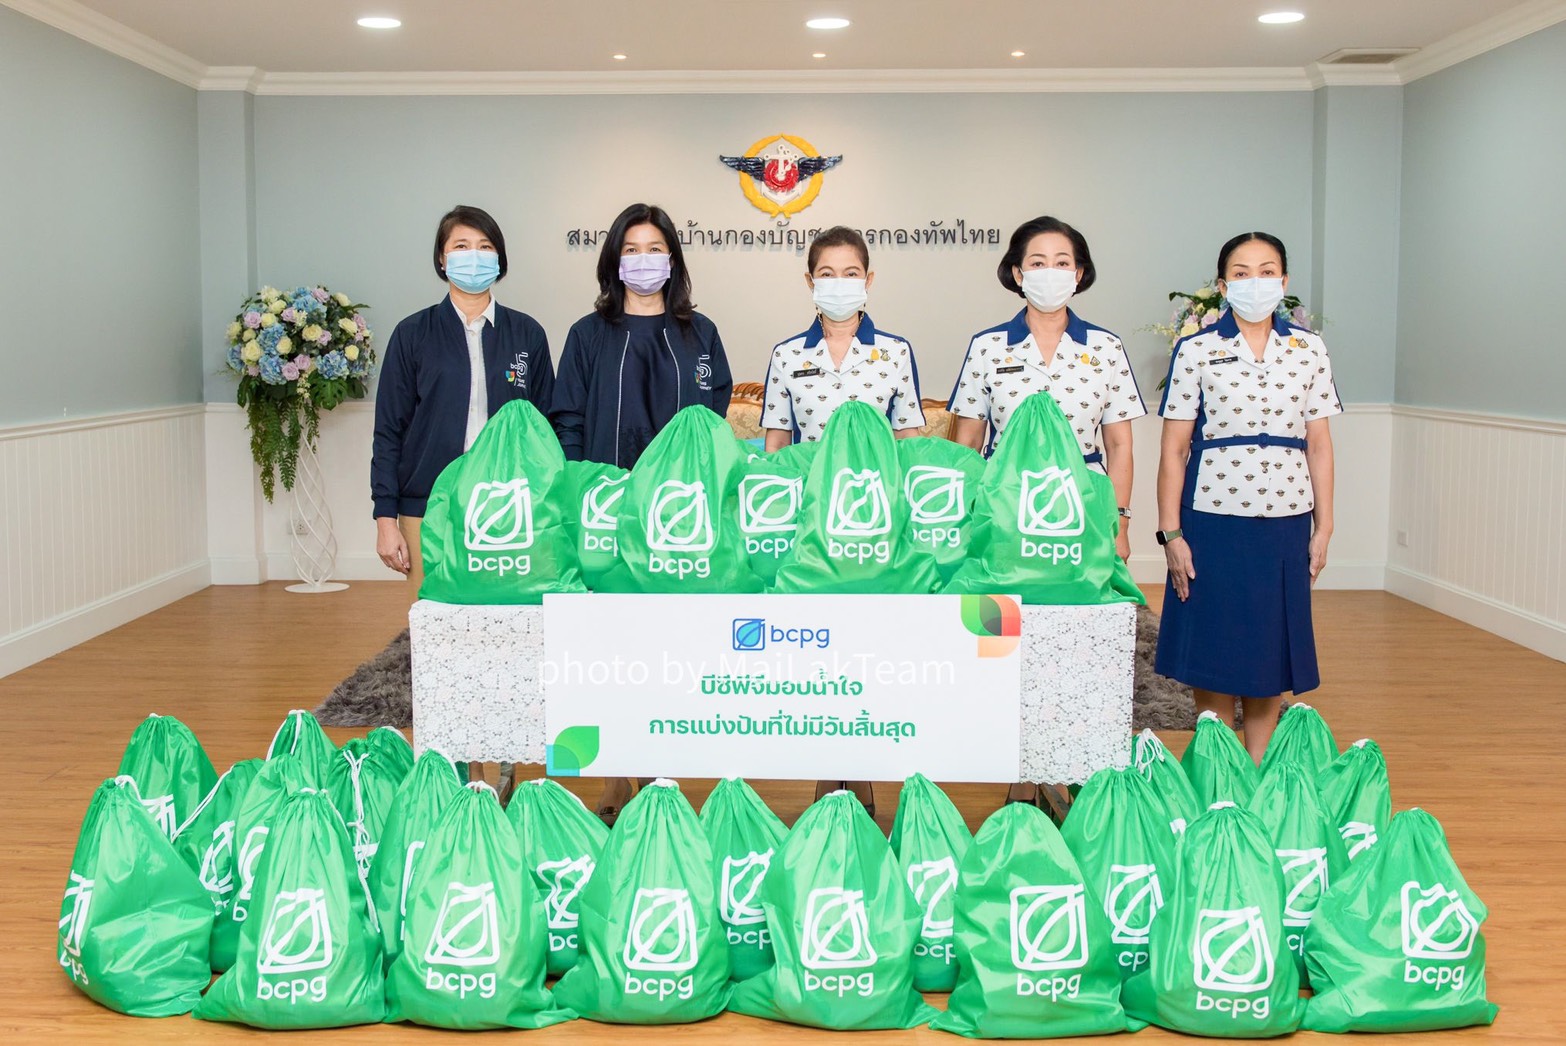 “บีซีพีจี” มอบถุงยังชีพให้สมาคมแม่บ้านกองบัญชาการกองทัพไทย ส่งต่อน้ำใจให้ผู้เดือดร้อนจากโควิด-19